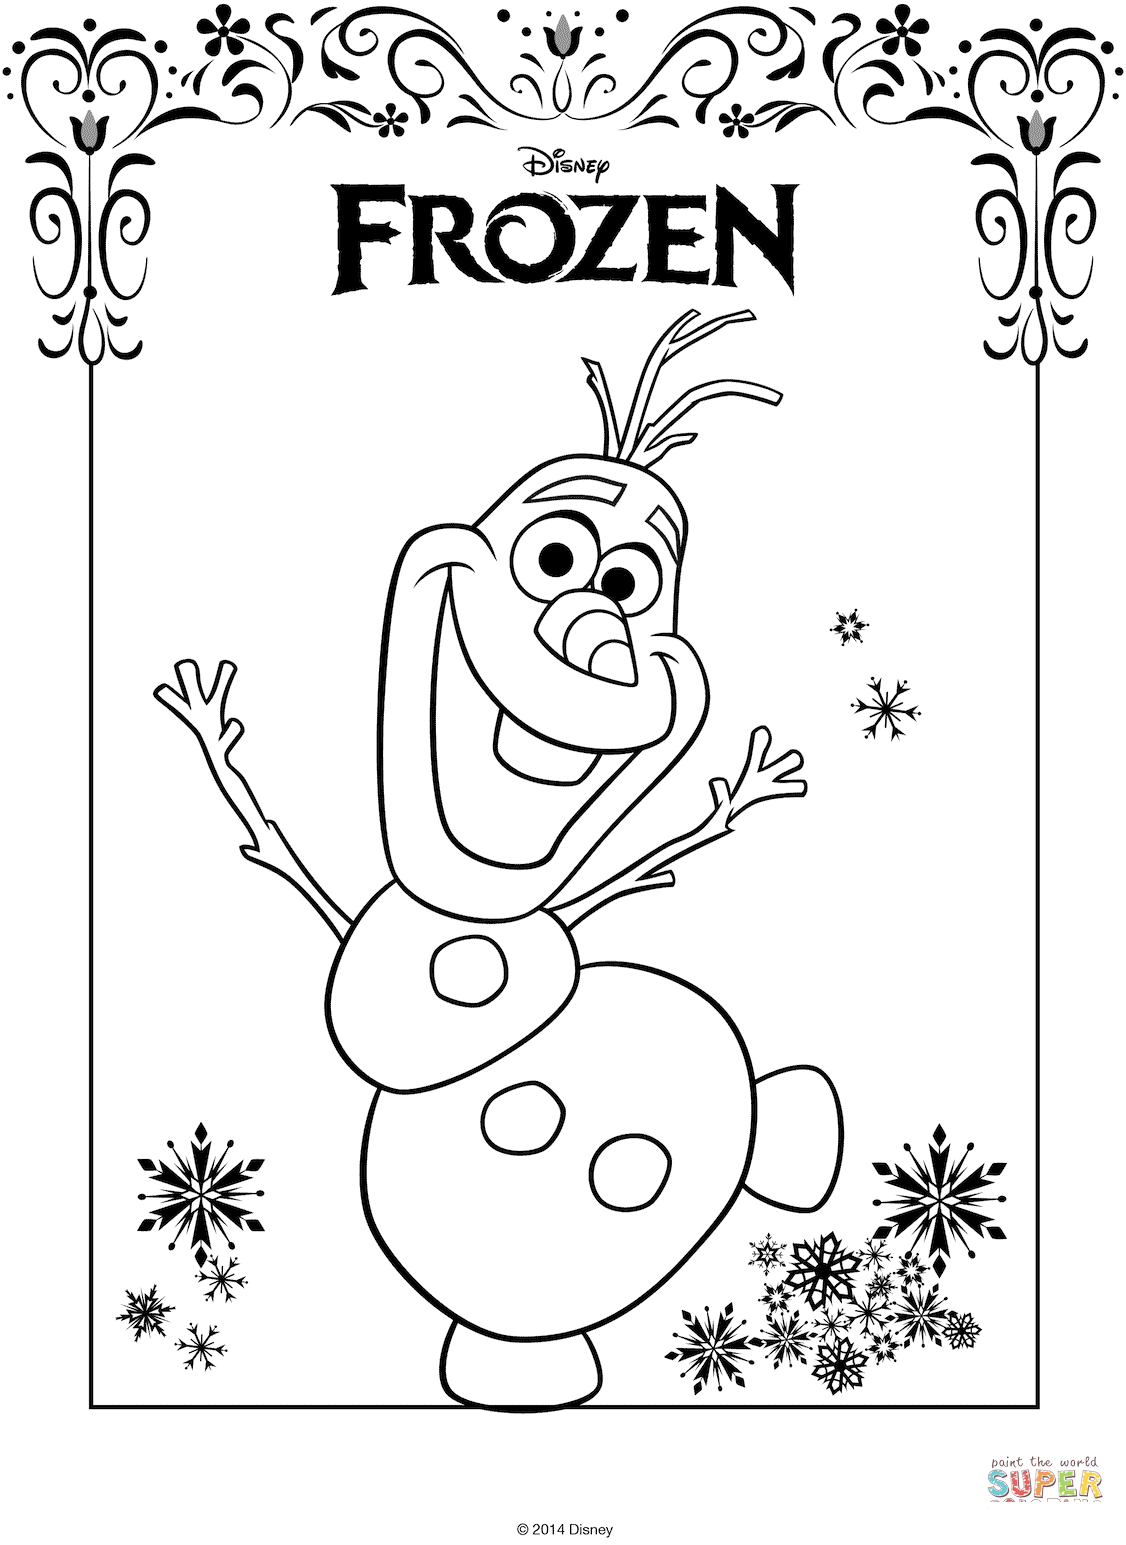 Olaf iz Smrznutog